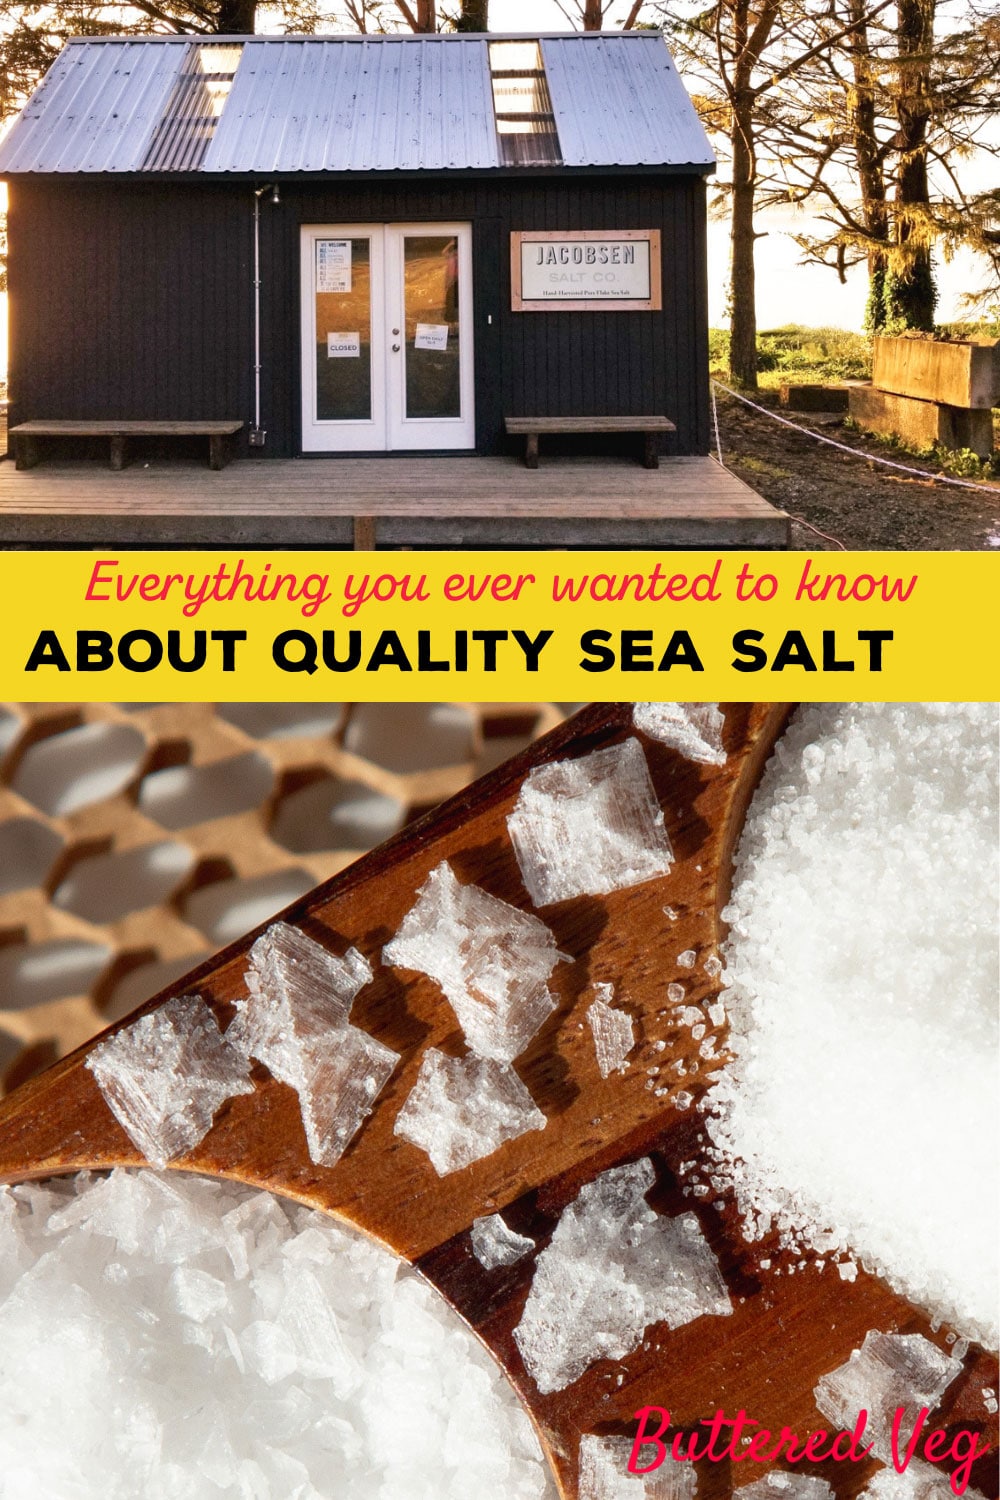 Salt Guide: This Quality Sea Salt Looks Like Shaved Ice, And Tastes Like The Sea